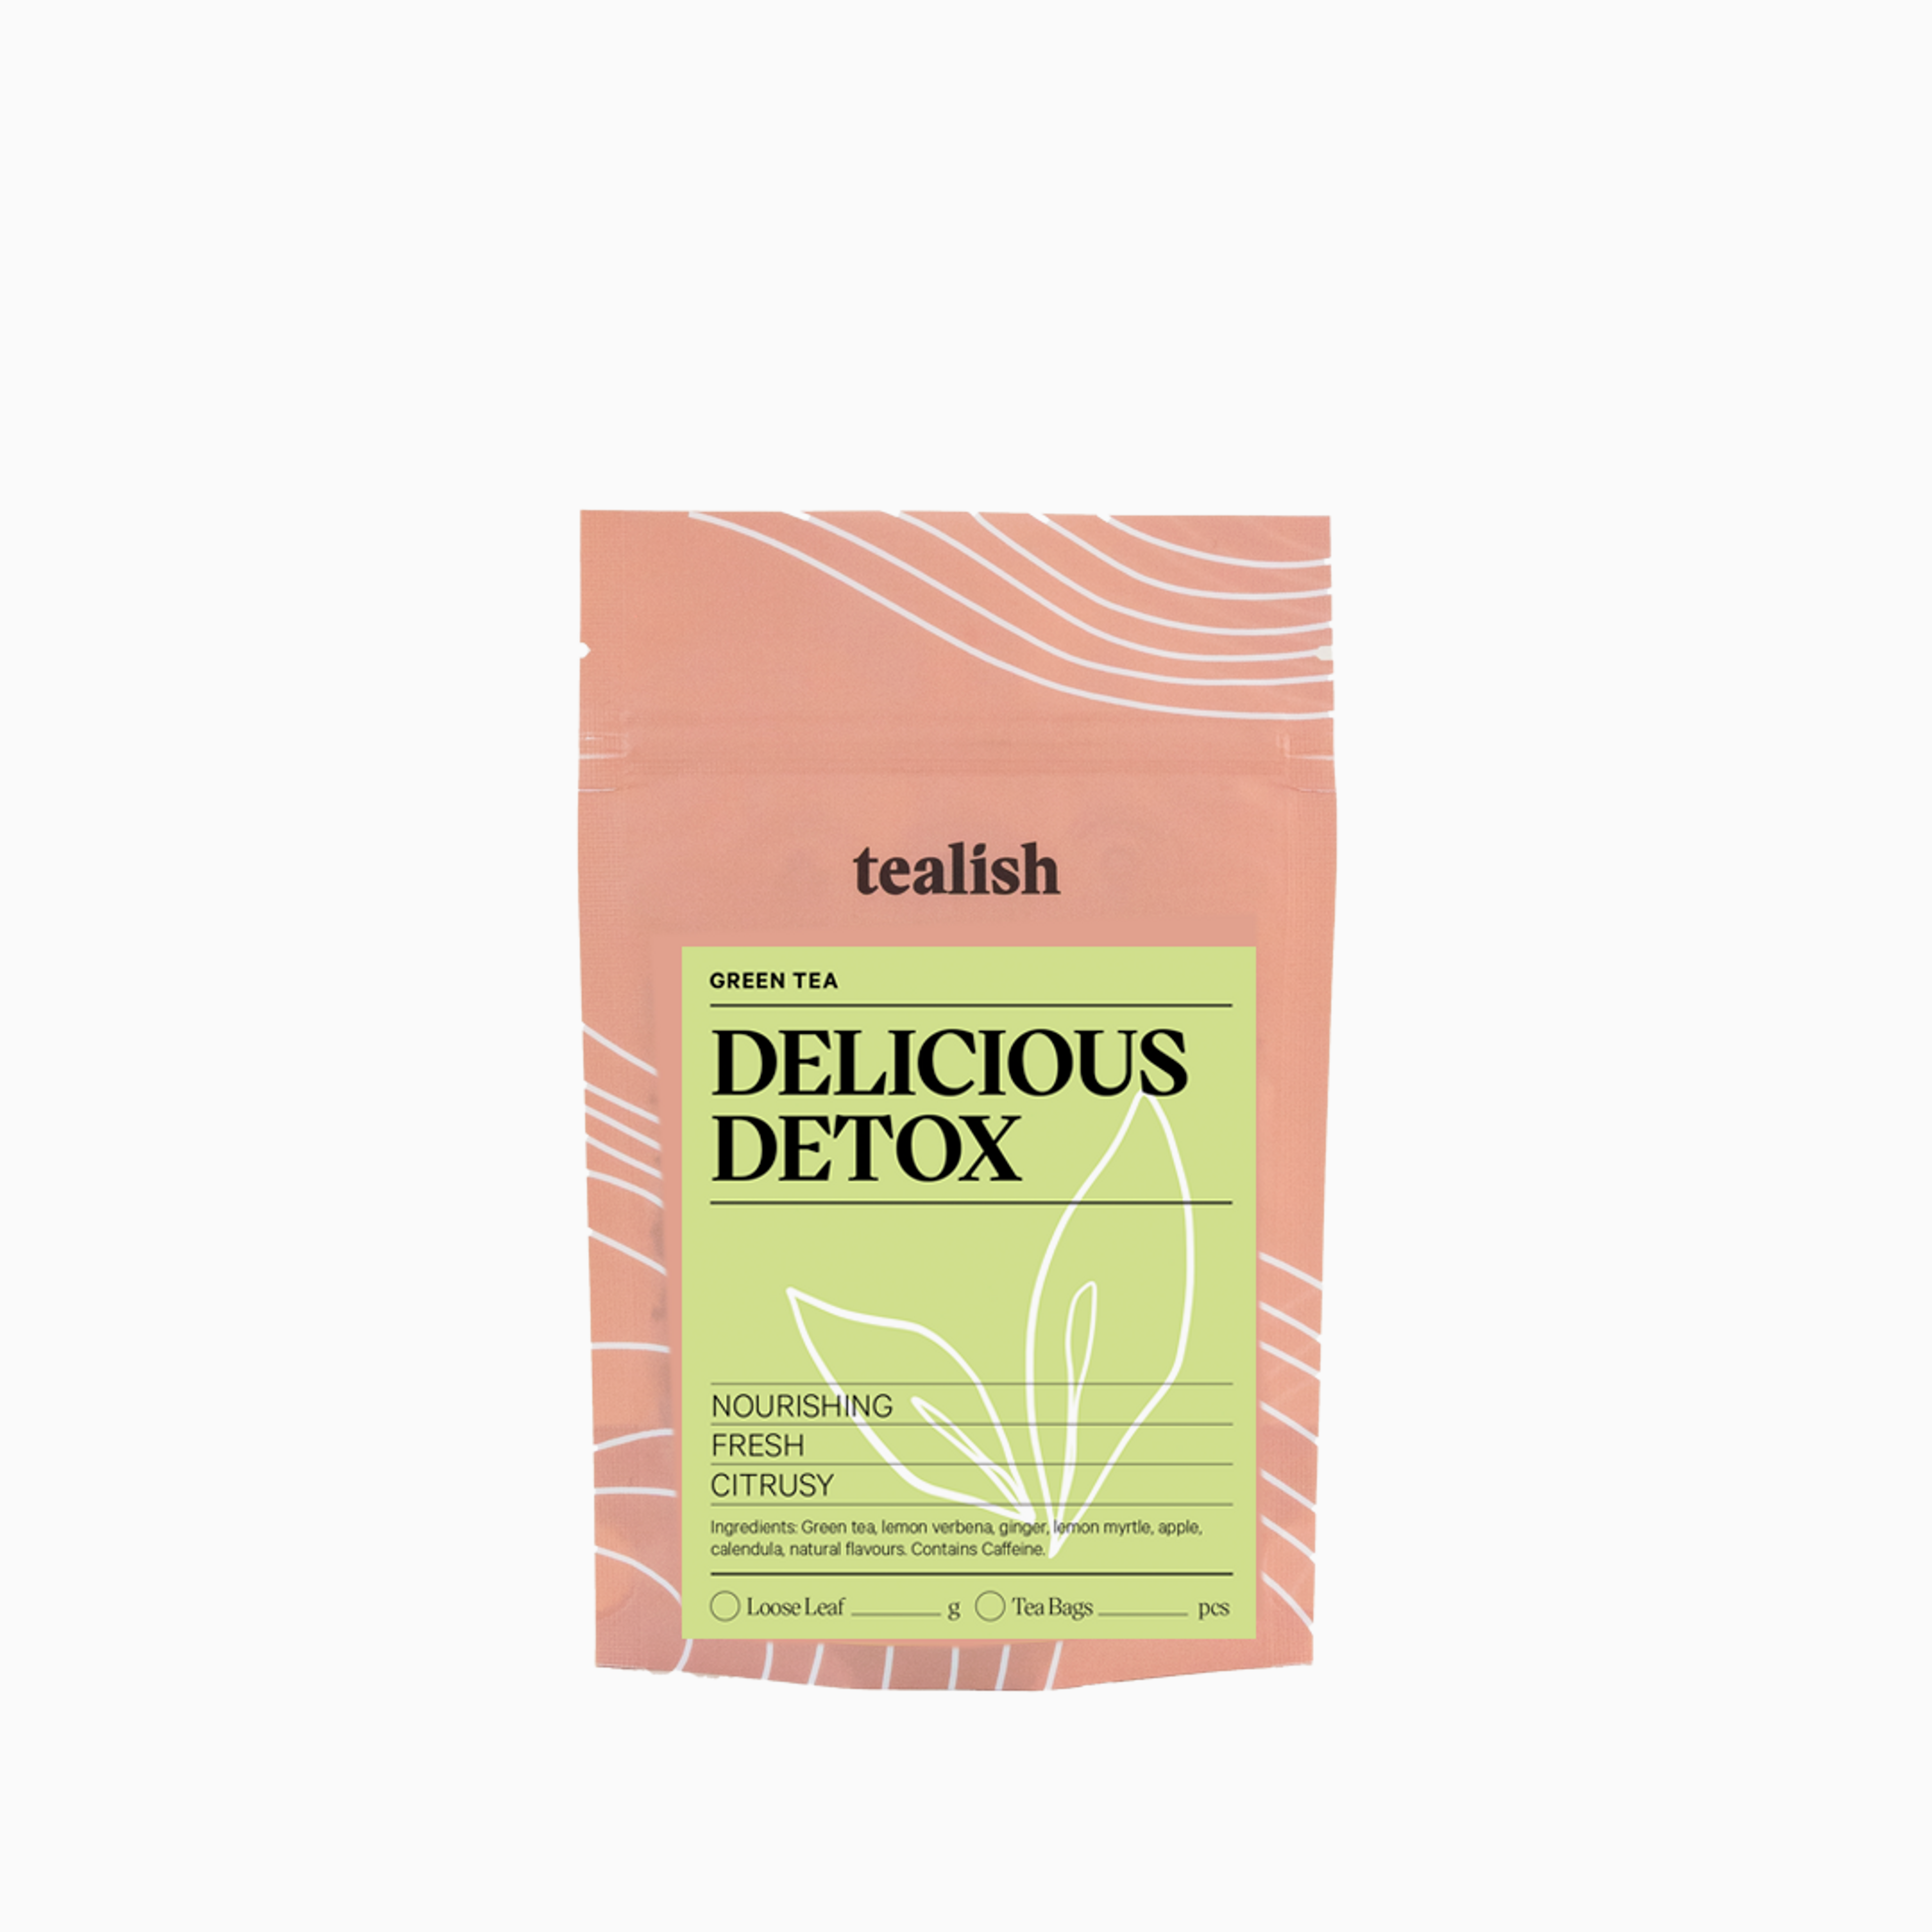 Delicious Detox